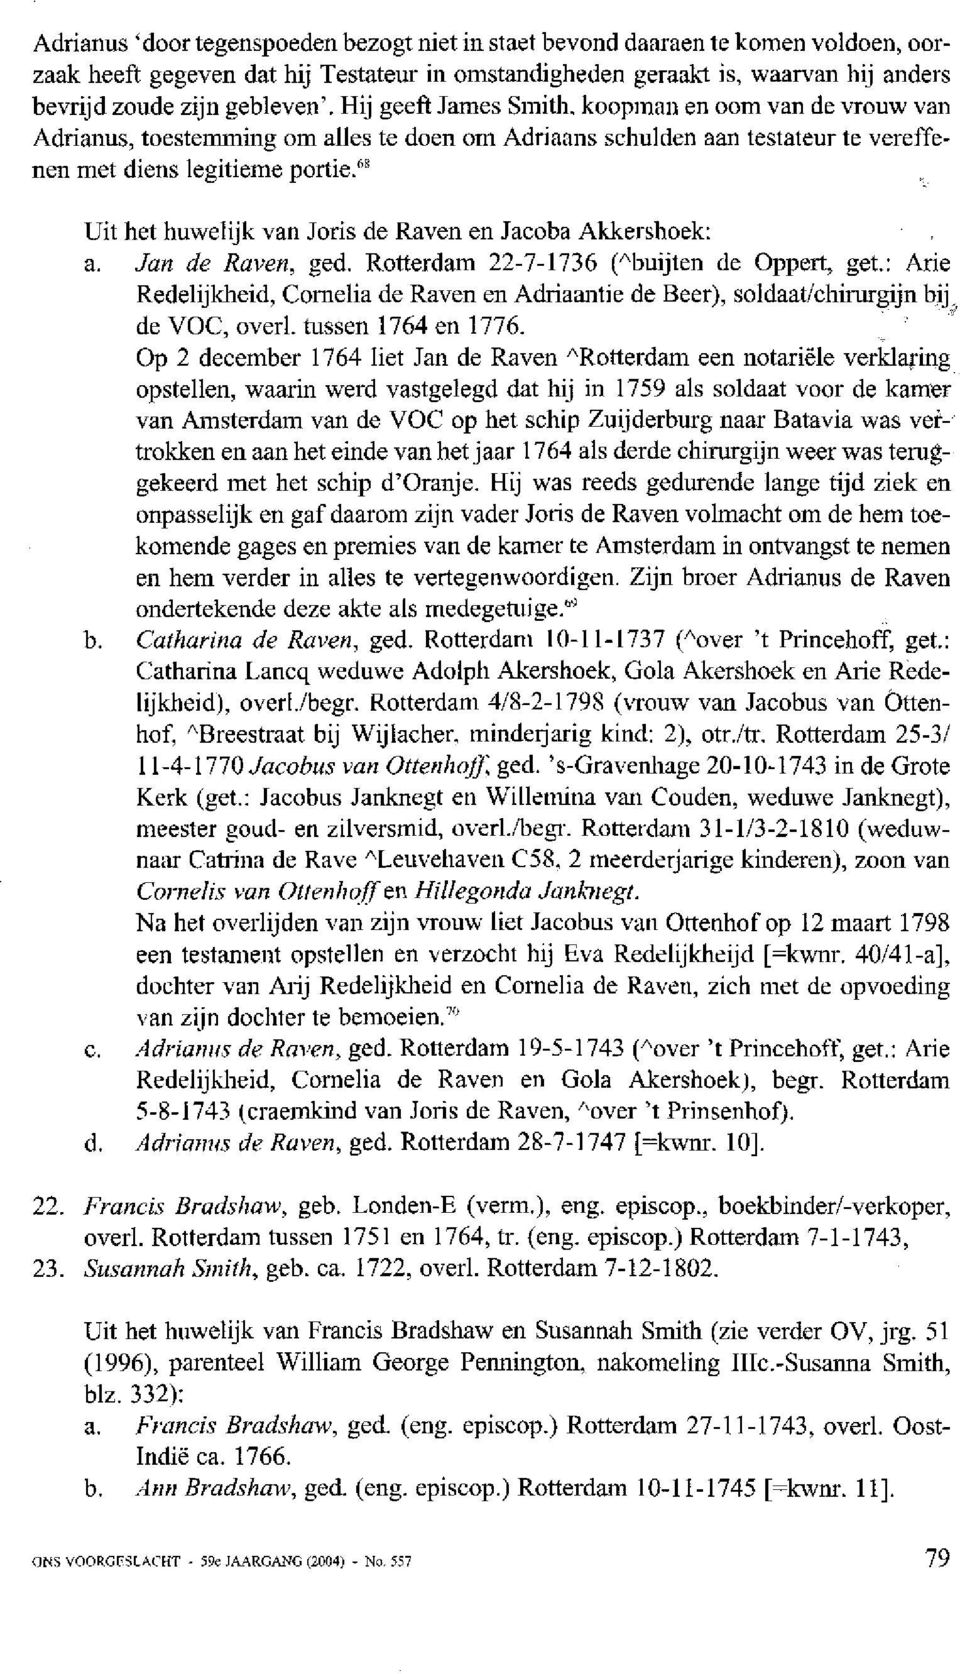 "' Uit het huwelijk van Joris de Raven en Jacoba Akkei-shoek: a. Jan de Raven, ged. Rotterdam 22-7-1736 ("buijten de Oppert, get.